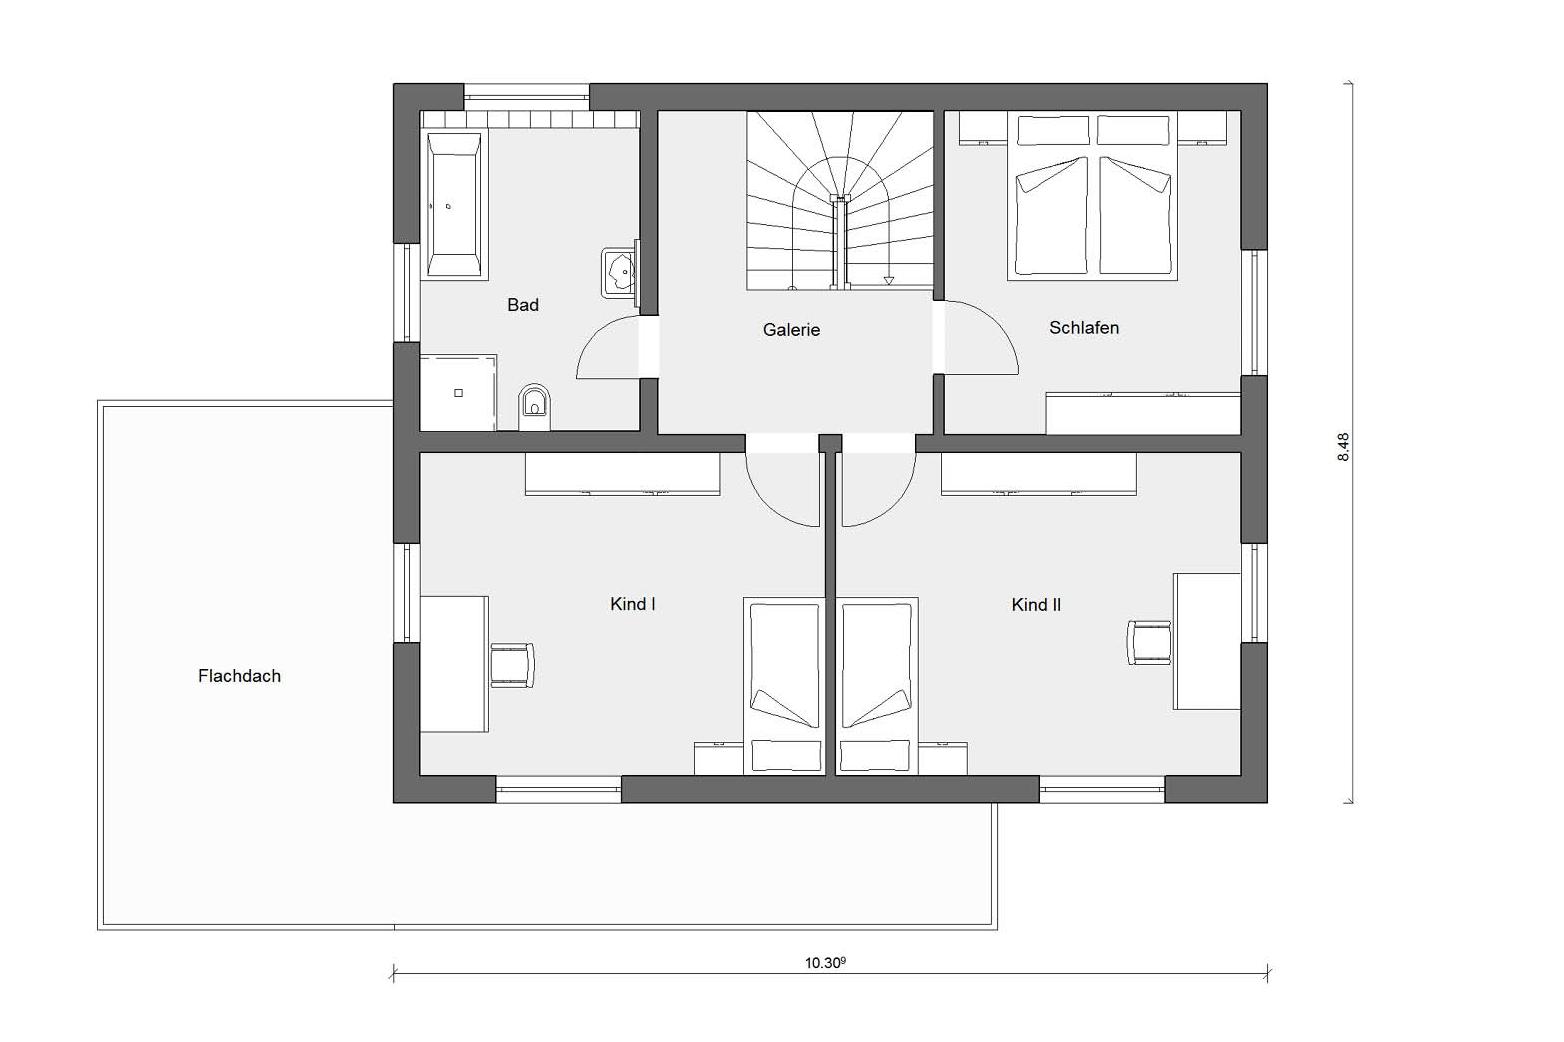 Pianta soffitta E 20-144.2 Moderno stile Bauhaus